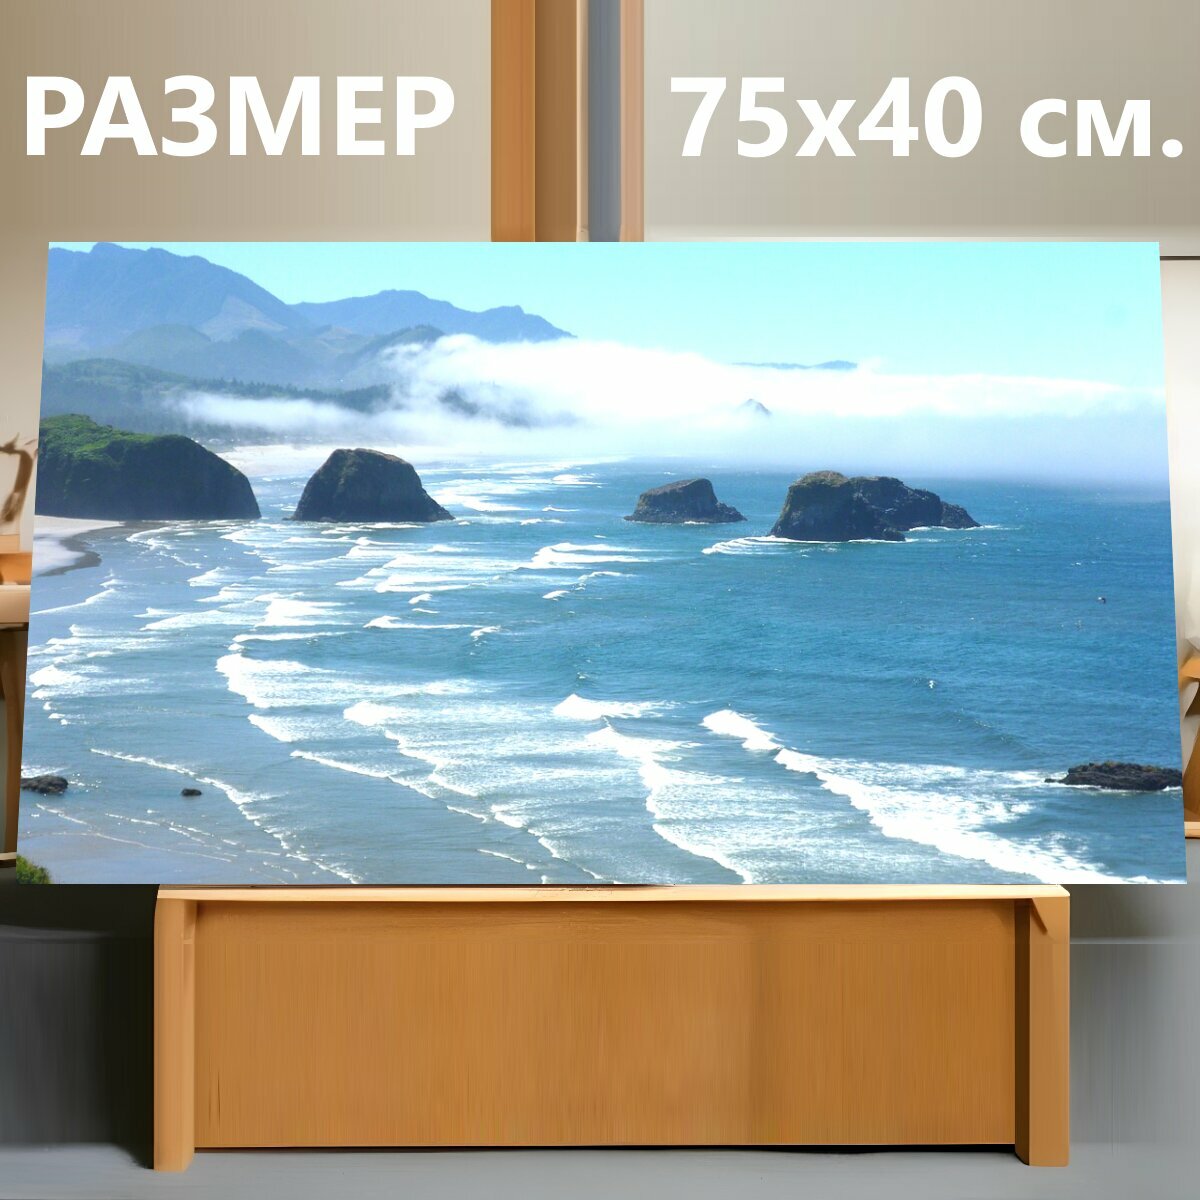 Картина на холсте "Океан, морской берег, волны" на подрамнике 75х40 см. для интерьера